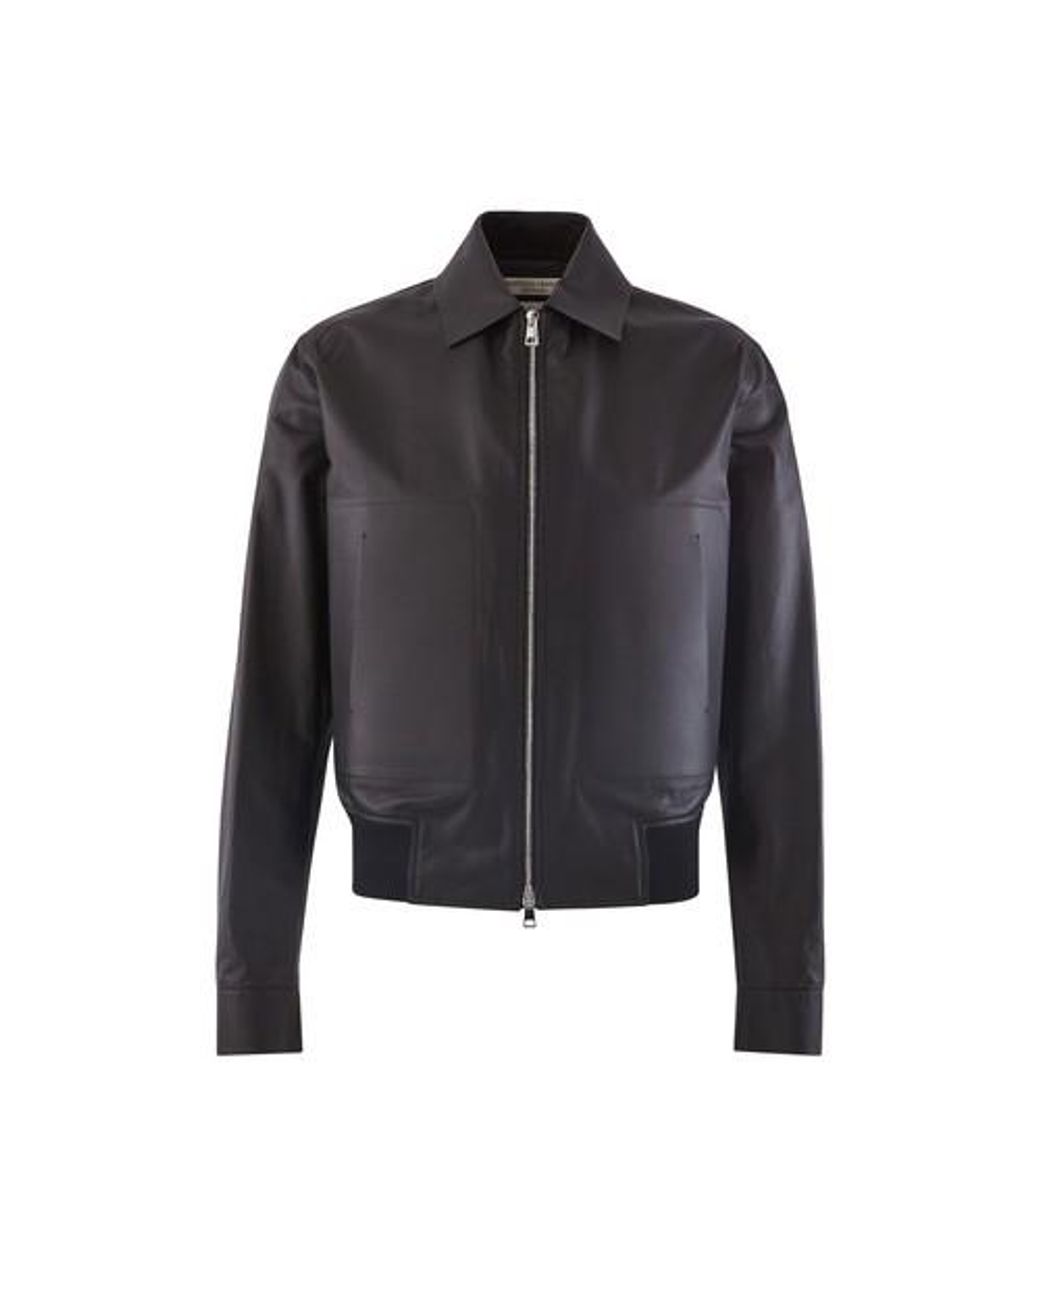 Bottega Veneta Calfskin Leather Jacket in Black for Men - Lyst